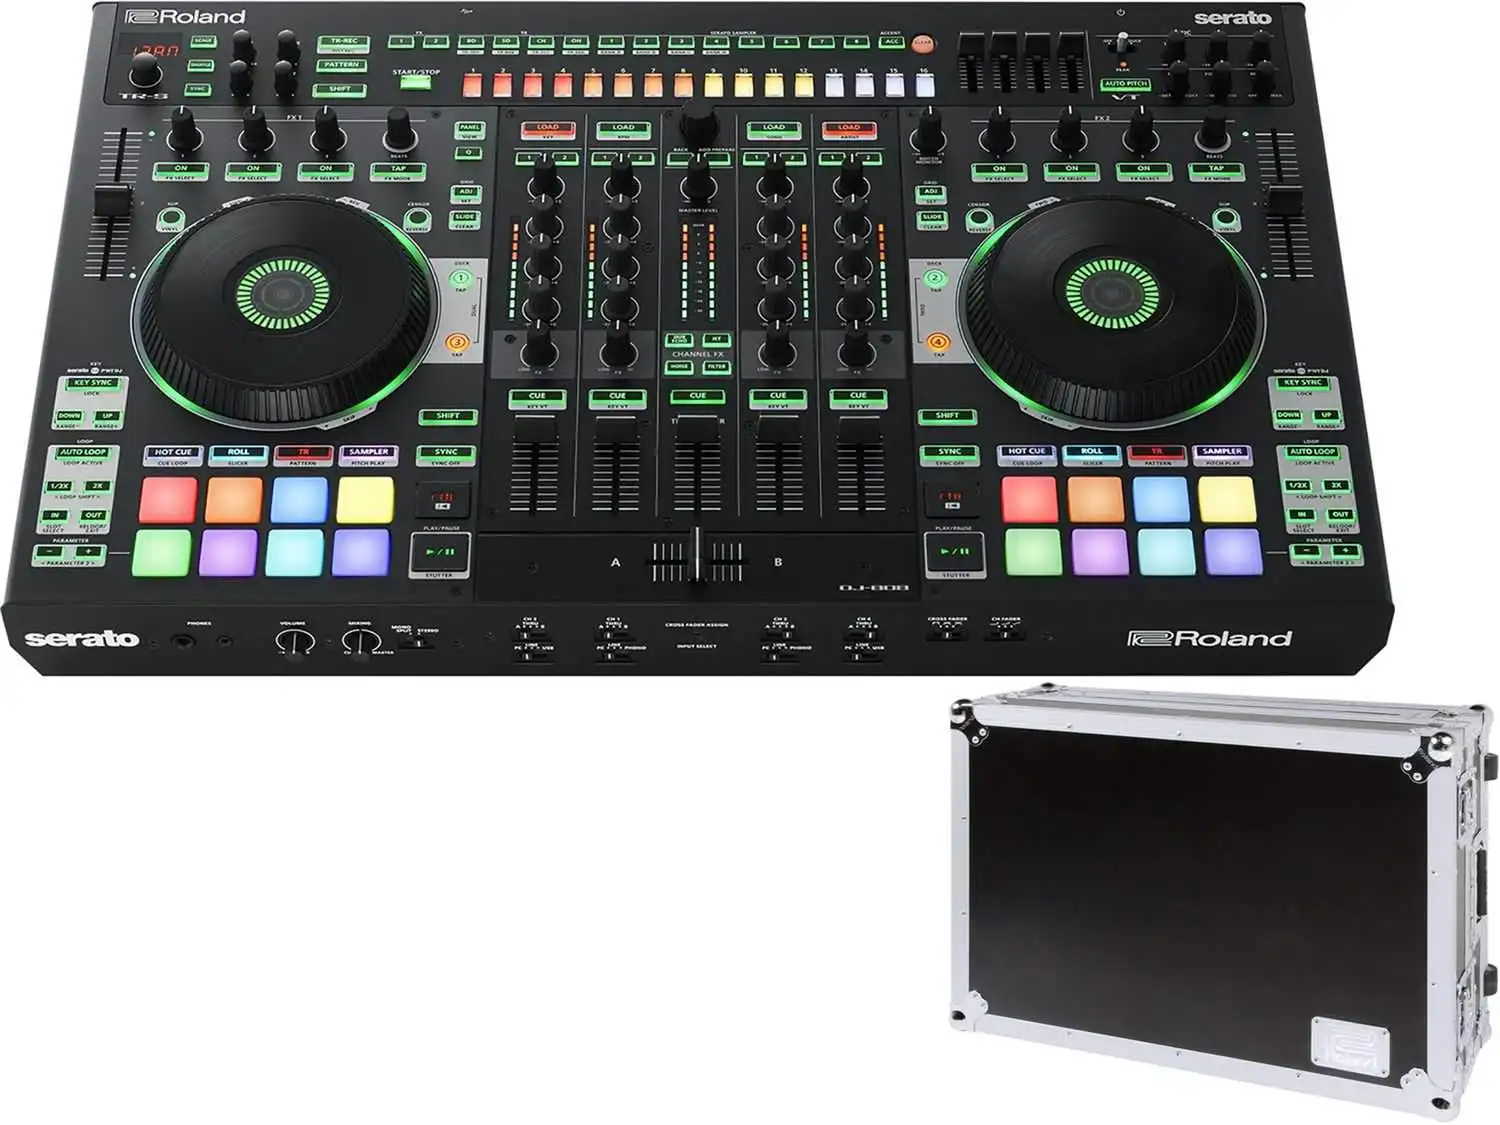 

Распродажа больших скидок, новый контроллер Roland DJ-707M 4-deck Serato DJ Pro с барабанной машиной и голосовым трансформатором